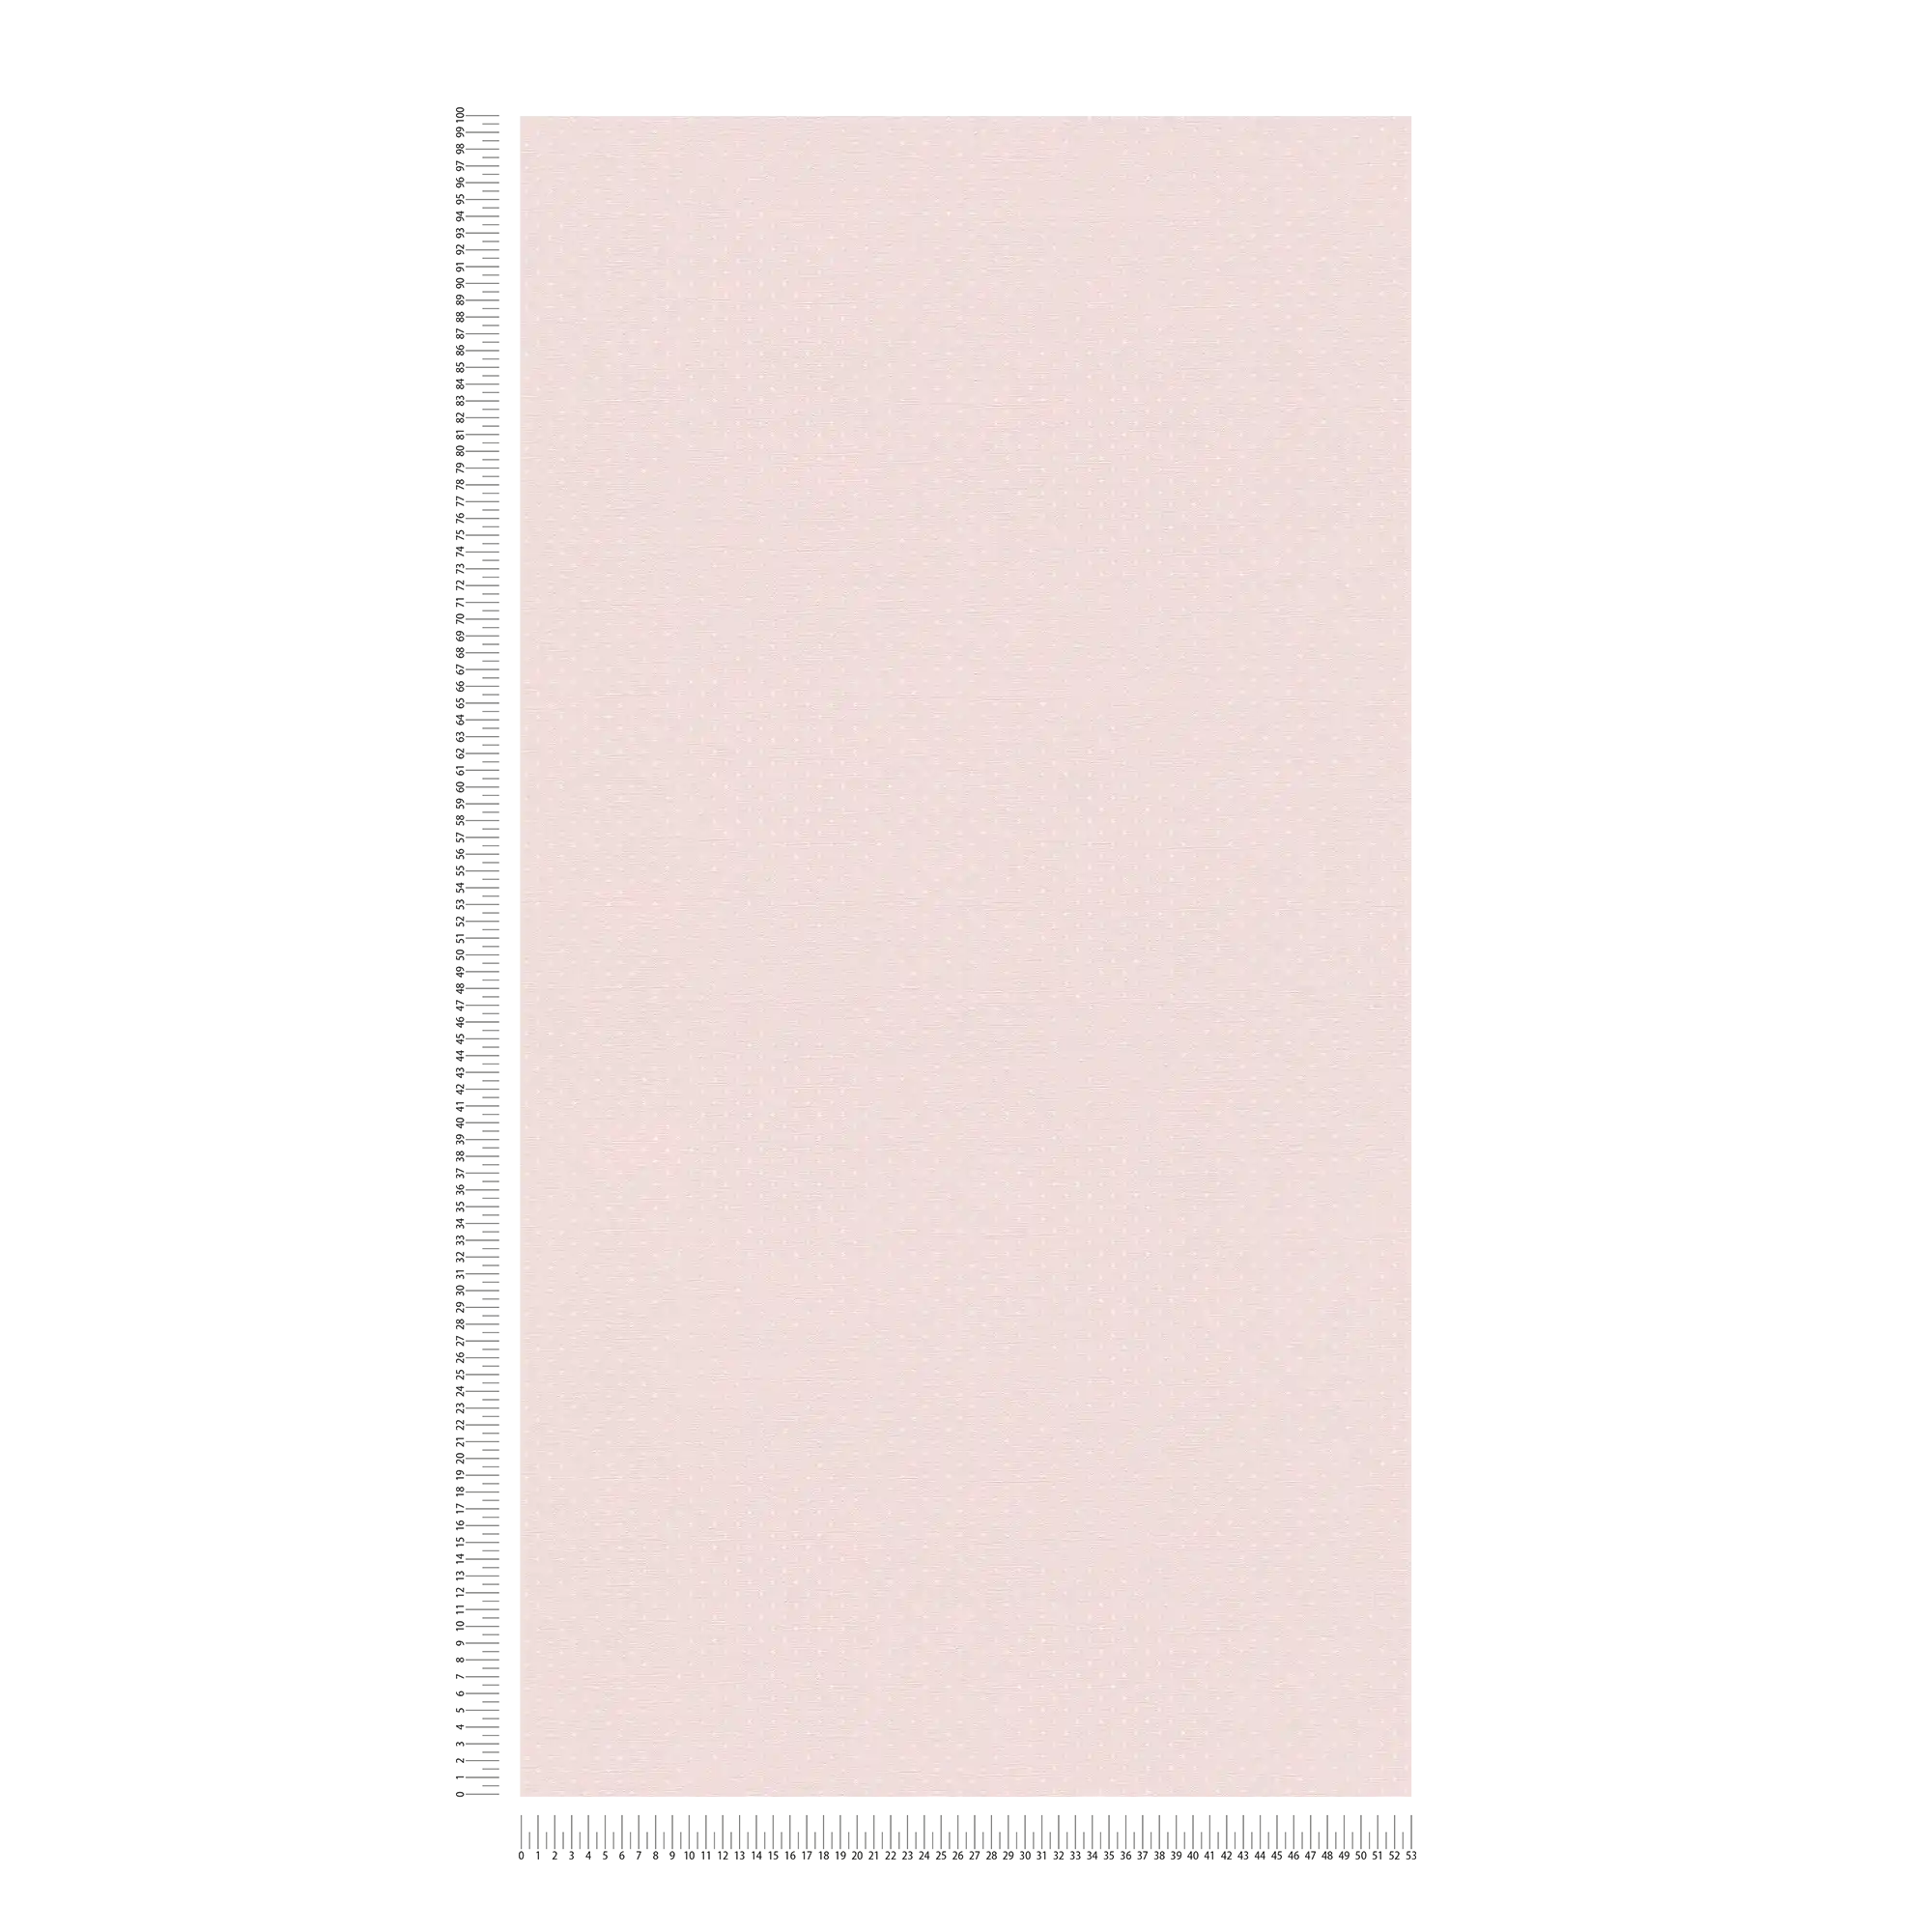             Carta da parati in stile country con piccoli punti - rosa, bianco
        